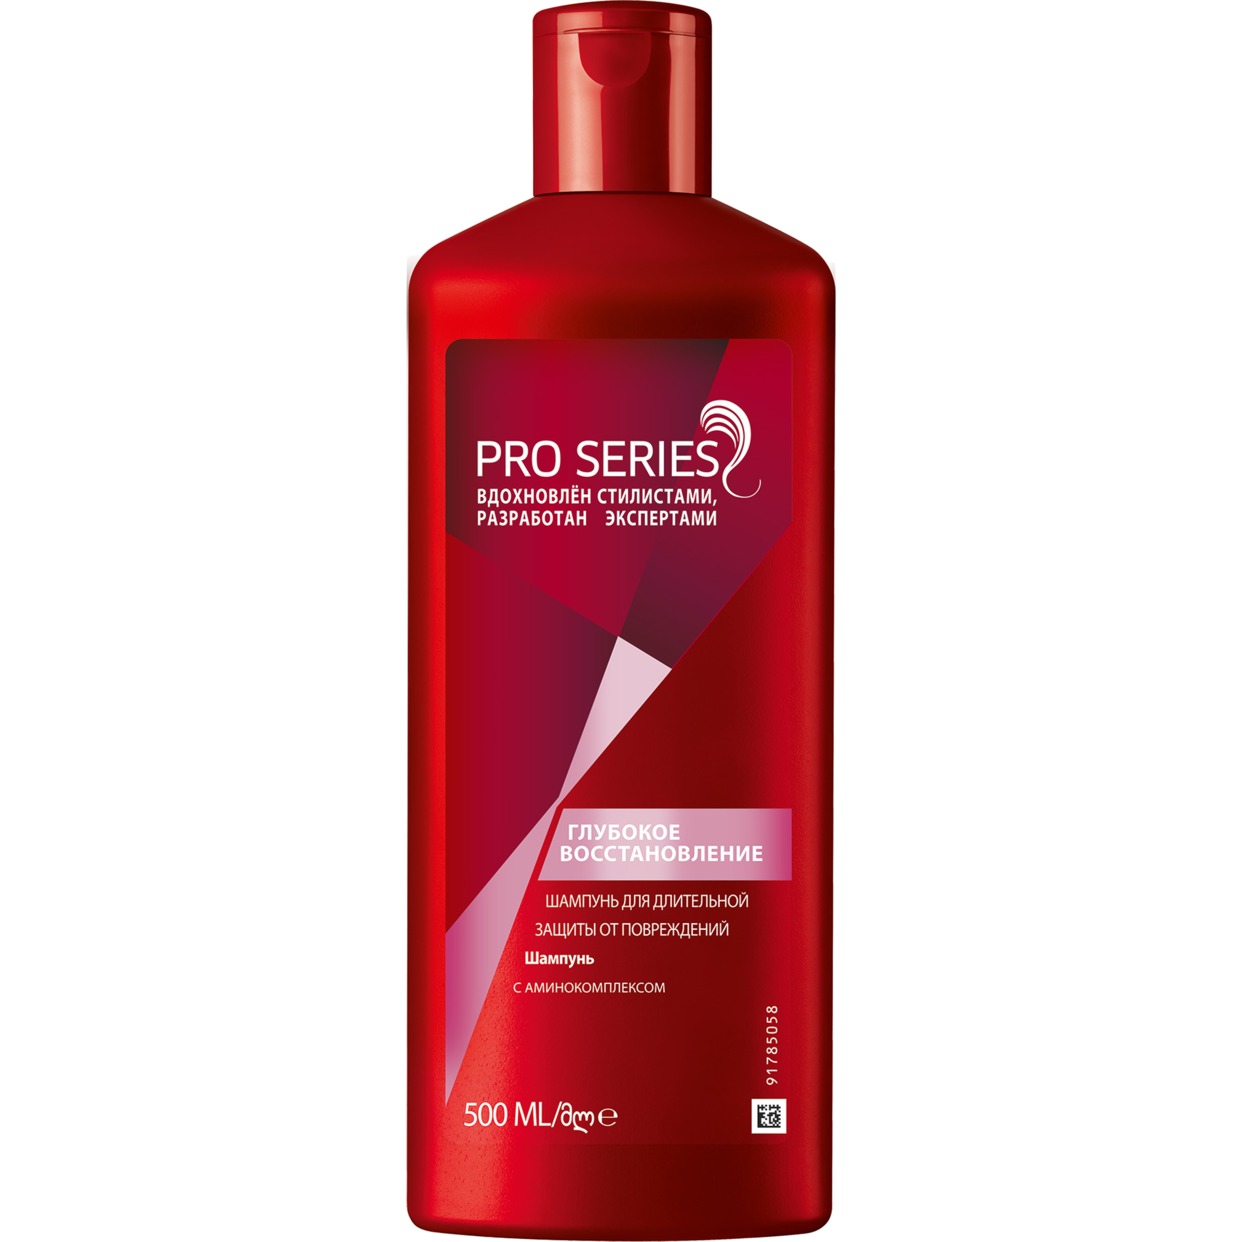 Шампунь для волос Wella Pro Series Глубокое восстановление 500 мл по акции в Пятерочке